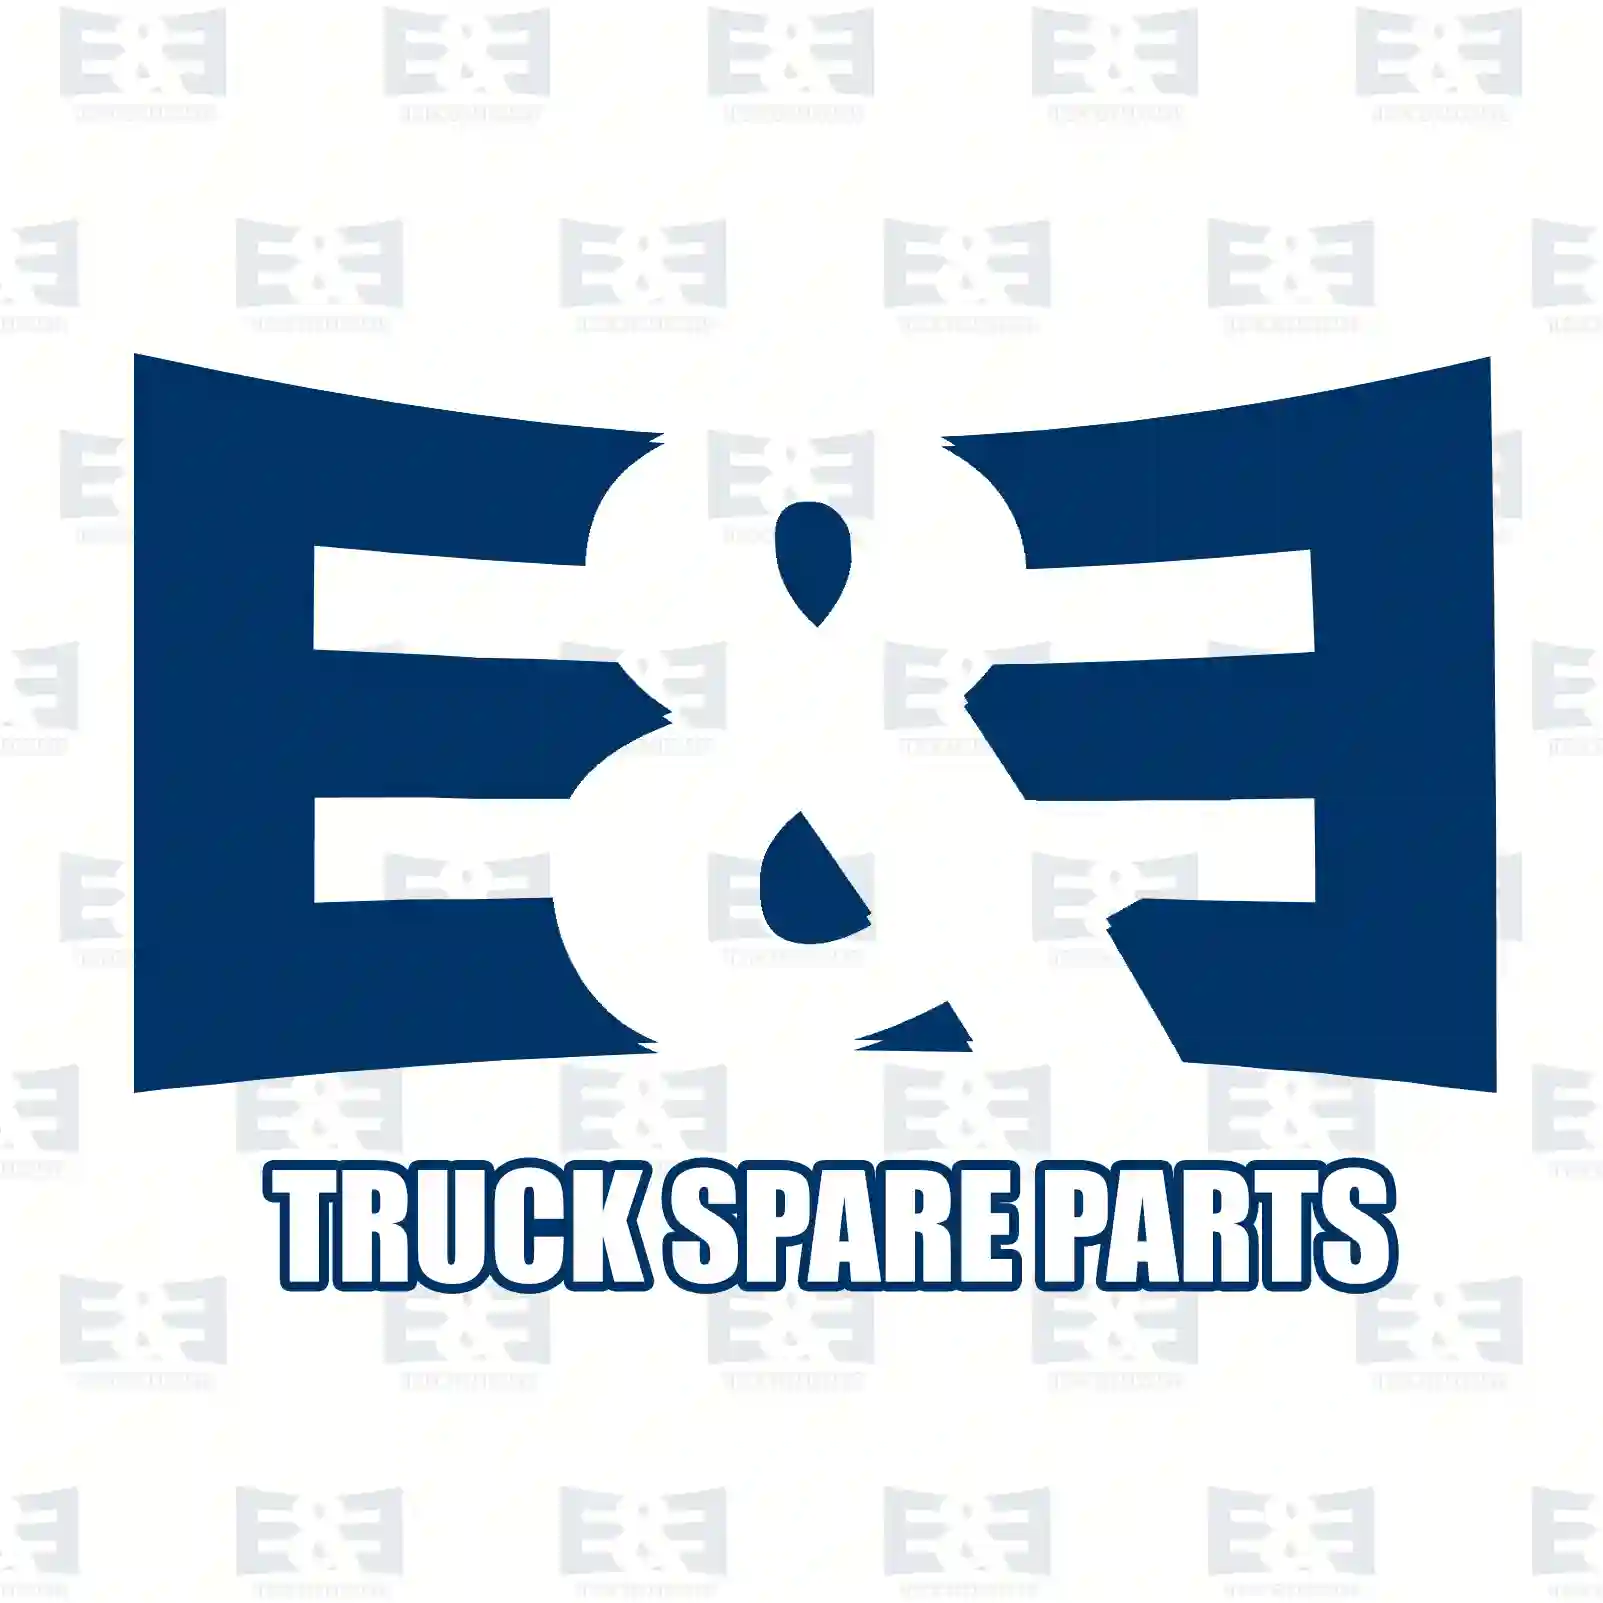 Exhaust brake, complete, 2E2208174, 1834869, 1840166 ||  2E2208174 E&E Truck Spare Parts | Truck Spare Parts, Auotomotive Spare Parts Exhaust brake, complete, 2E2208174, 1834869, 1840166 ||  2E2208174 E&E Truck Spare Parts | Truck Spare Parts, Auotomotive Spare Parts